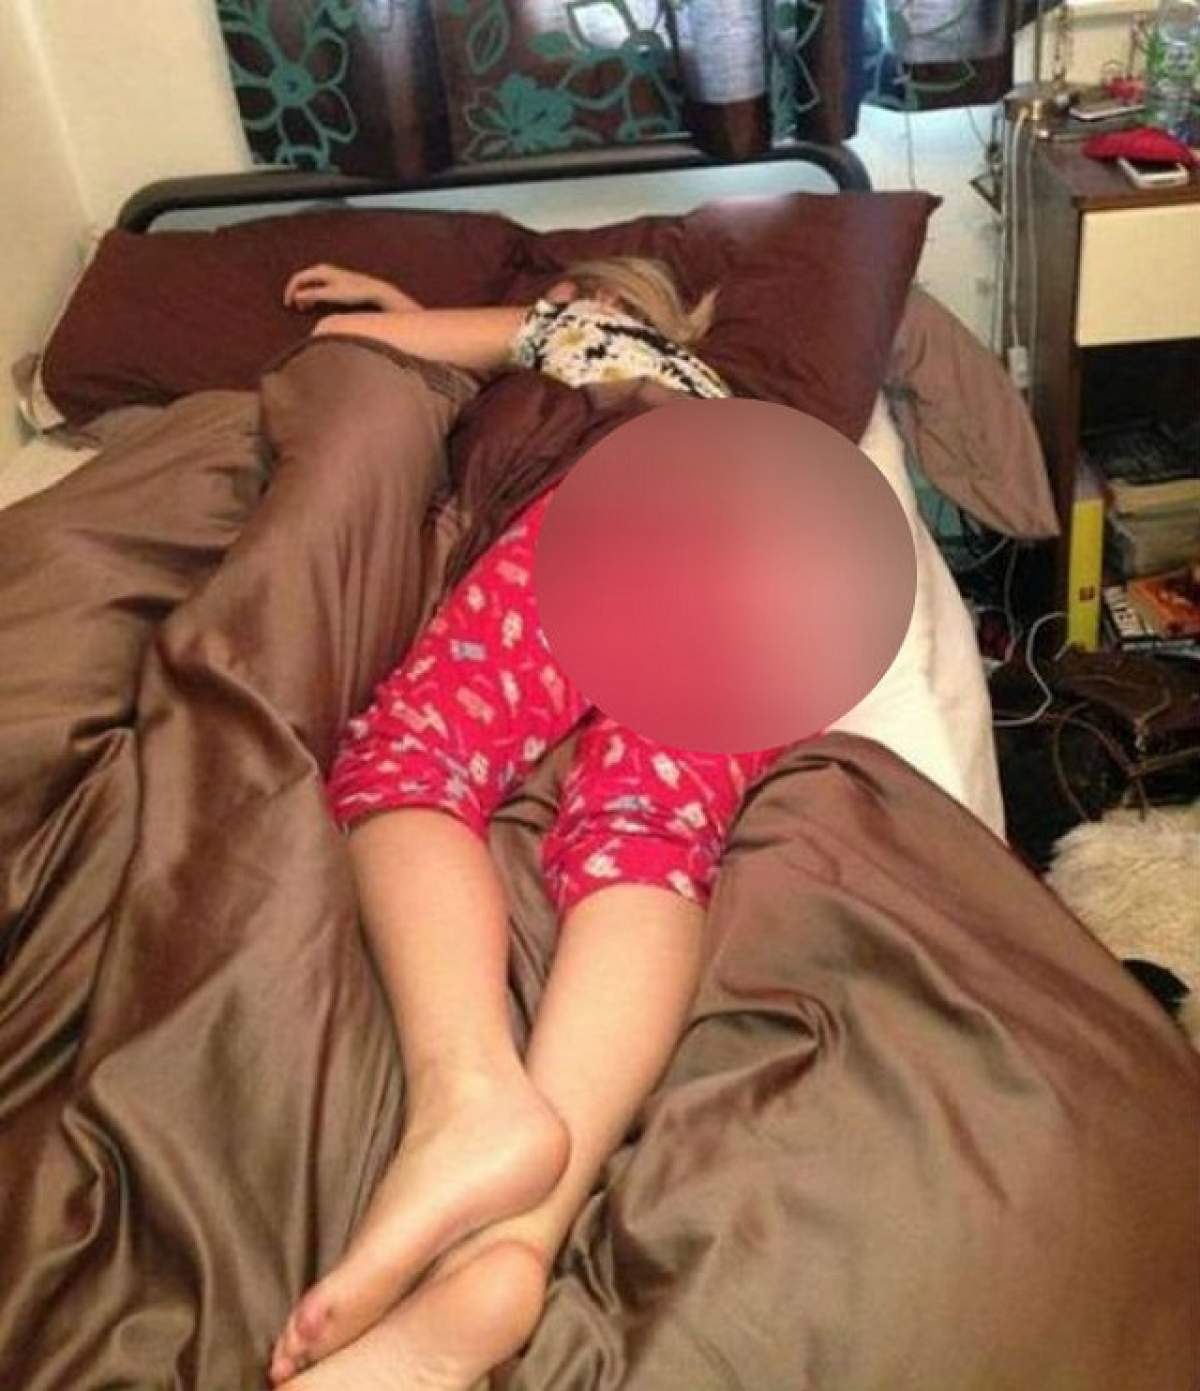 A adormit buştean şi nu a realizat că are pijamalele rupte în fund! "Priveliştea" pe care a oferit-o e greu de uitat!